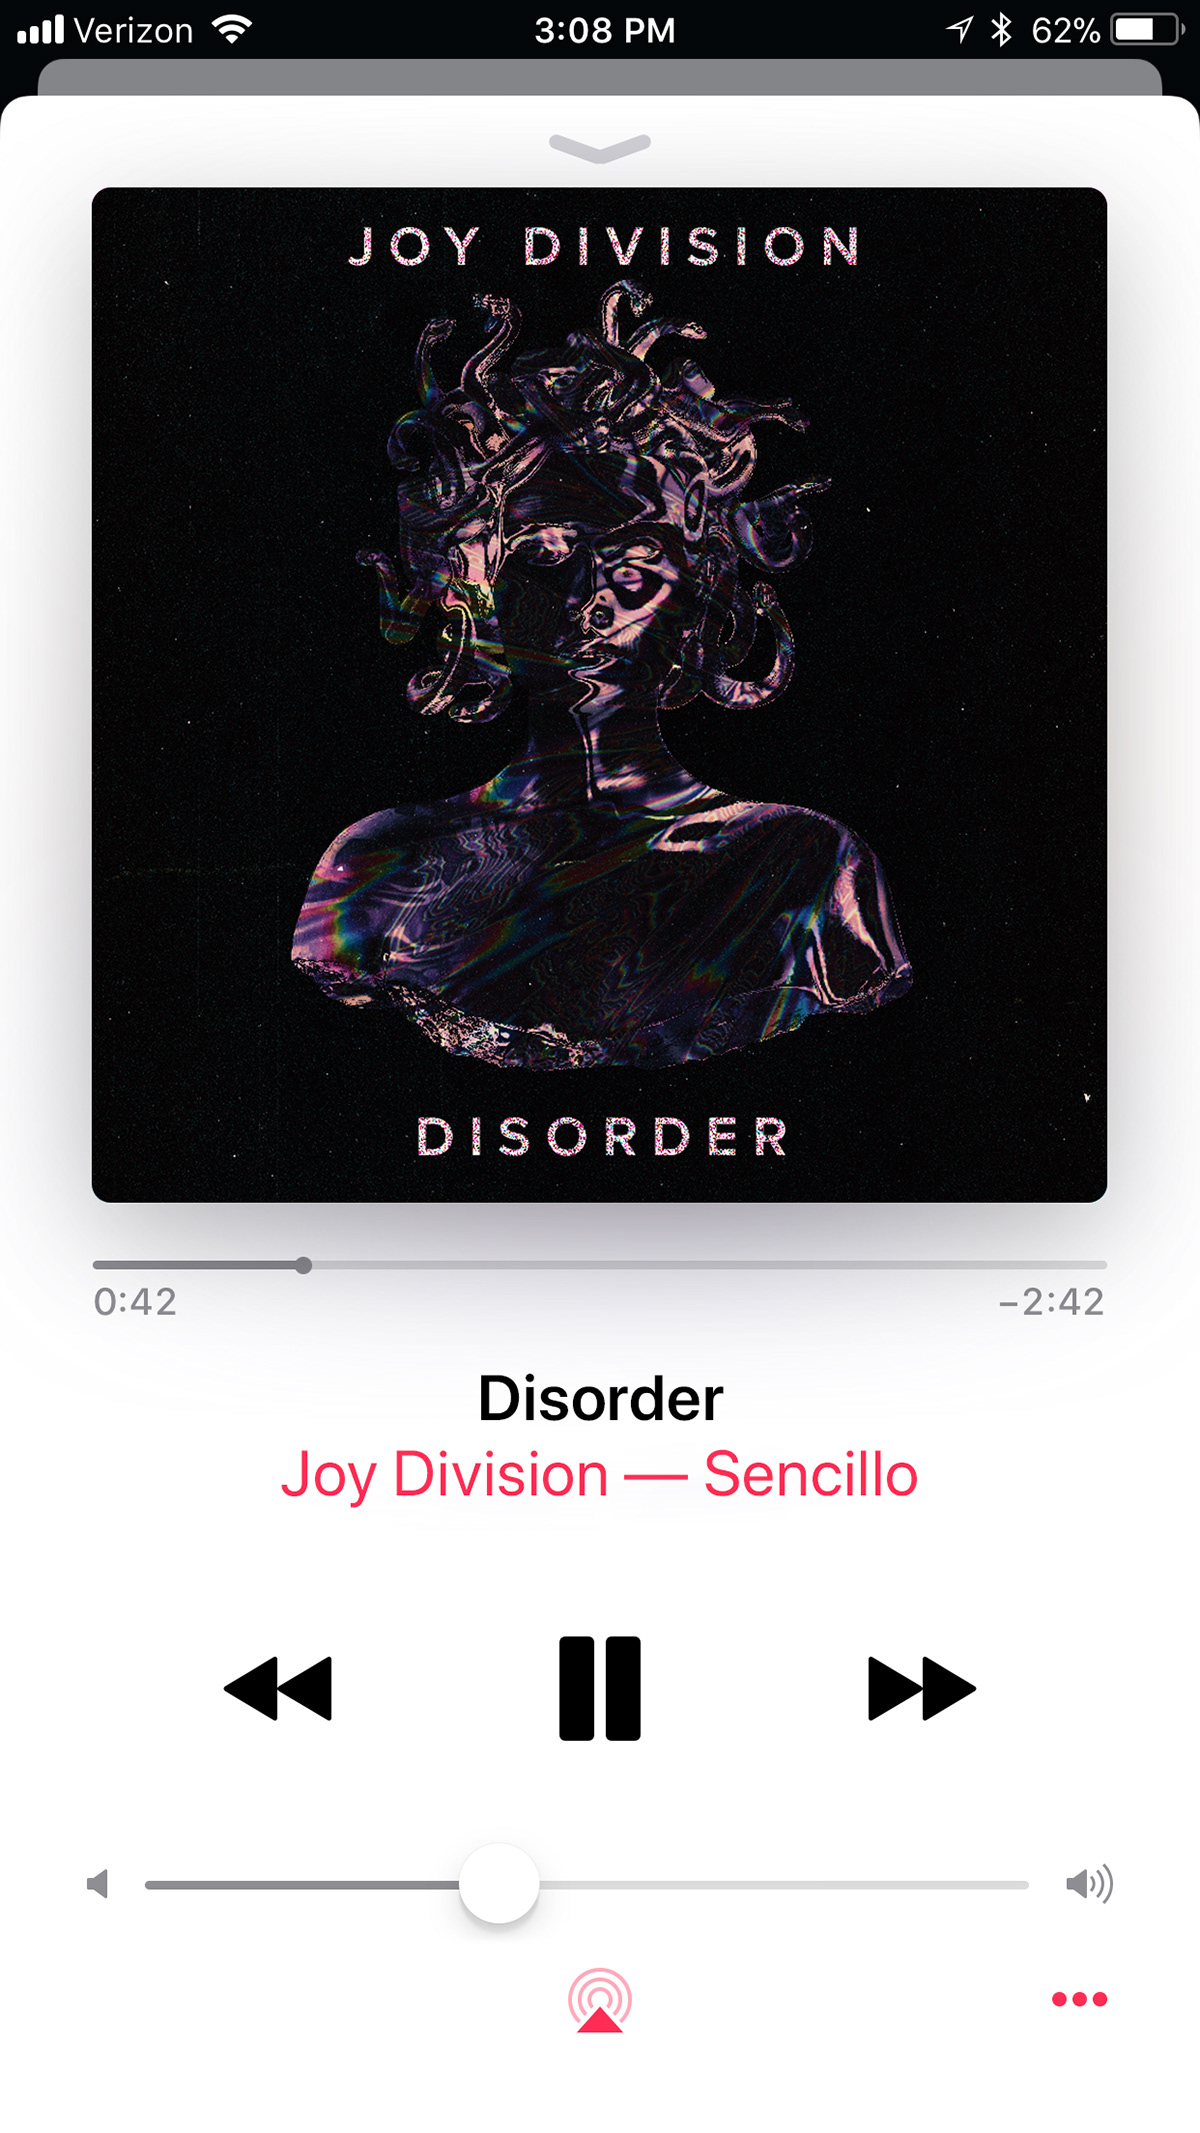 Album artwork cover CoverAlbum disorder fanart joydivision music